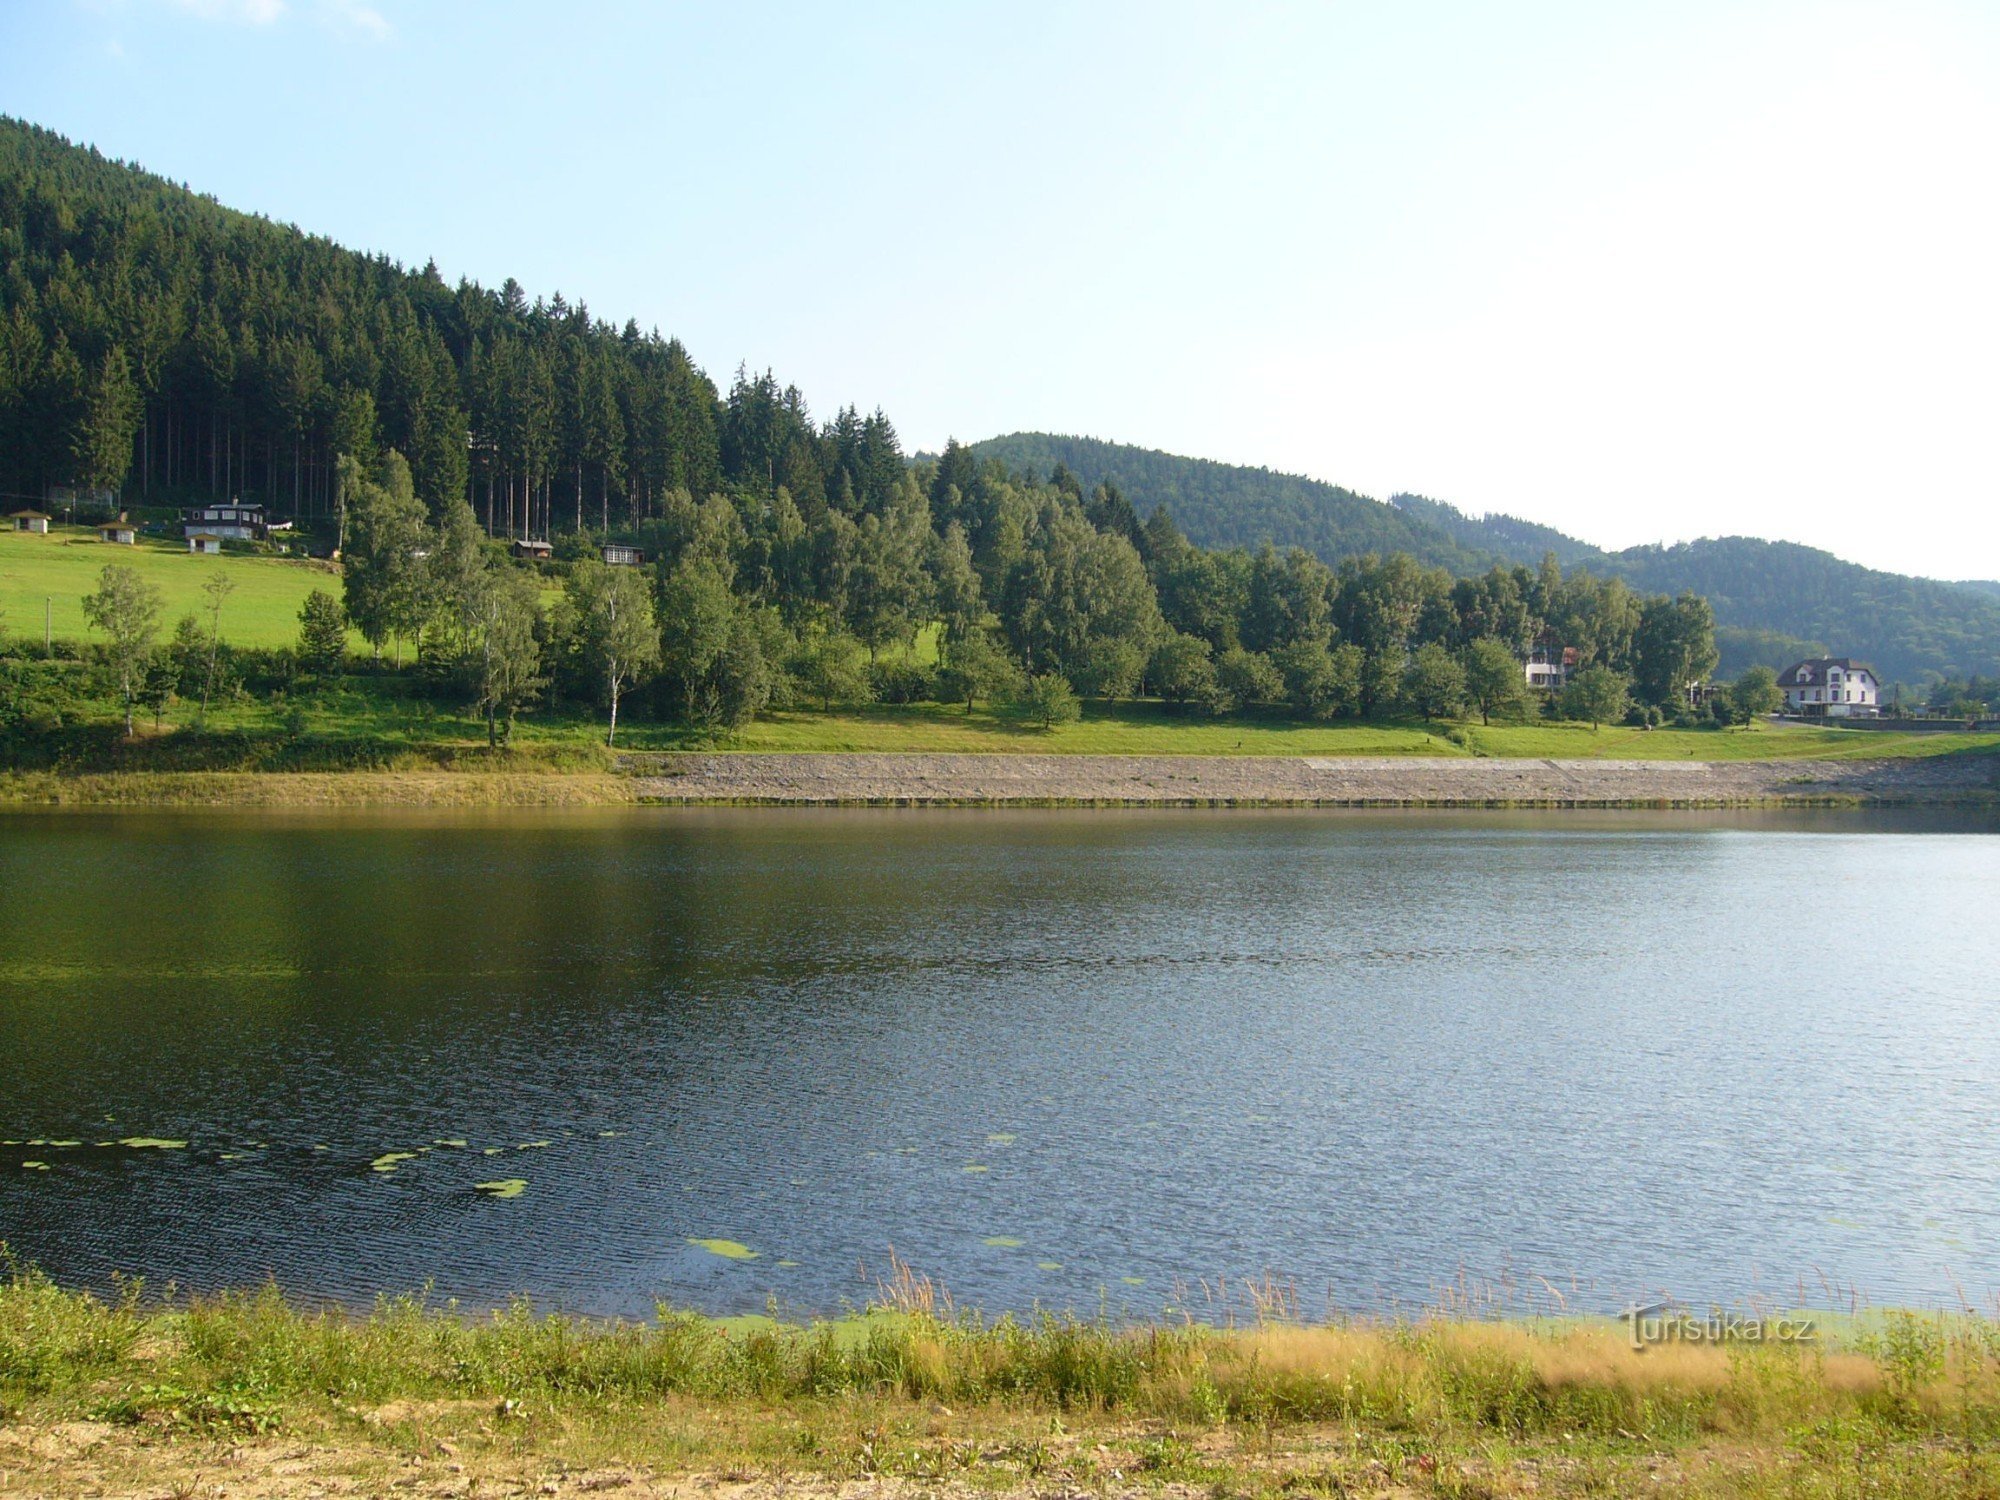 de Dušná via Klenov até a barragem de Bystřička